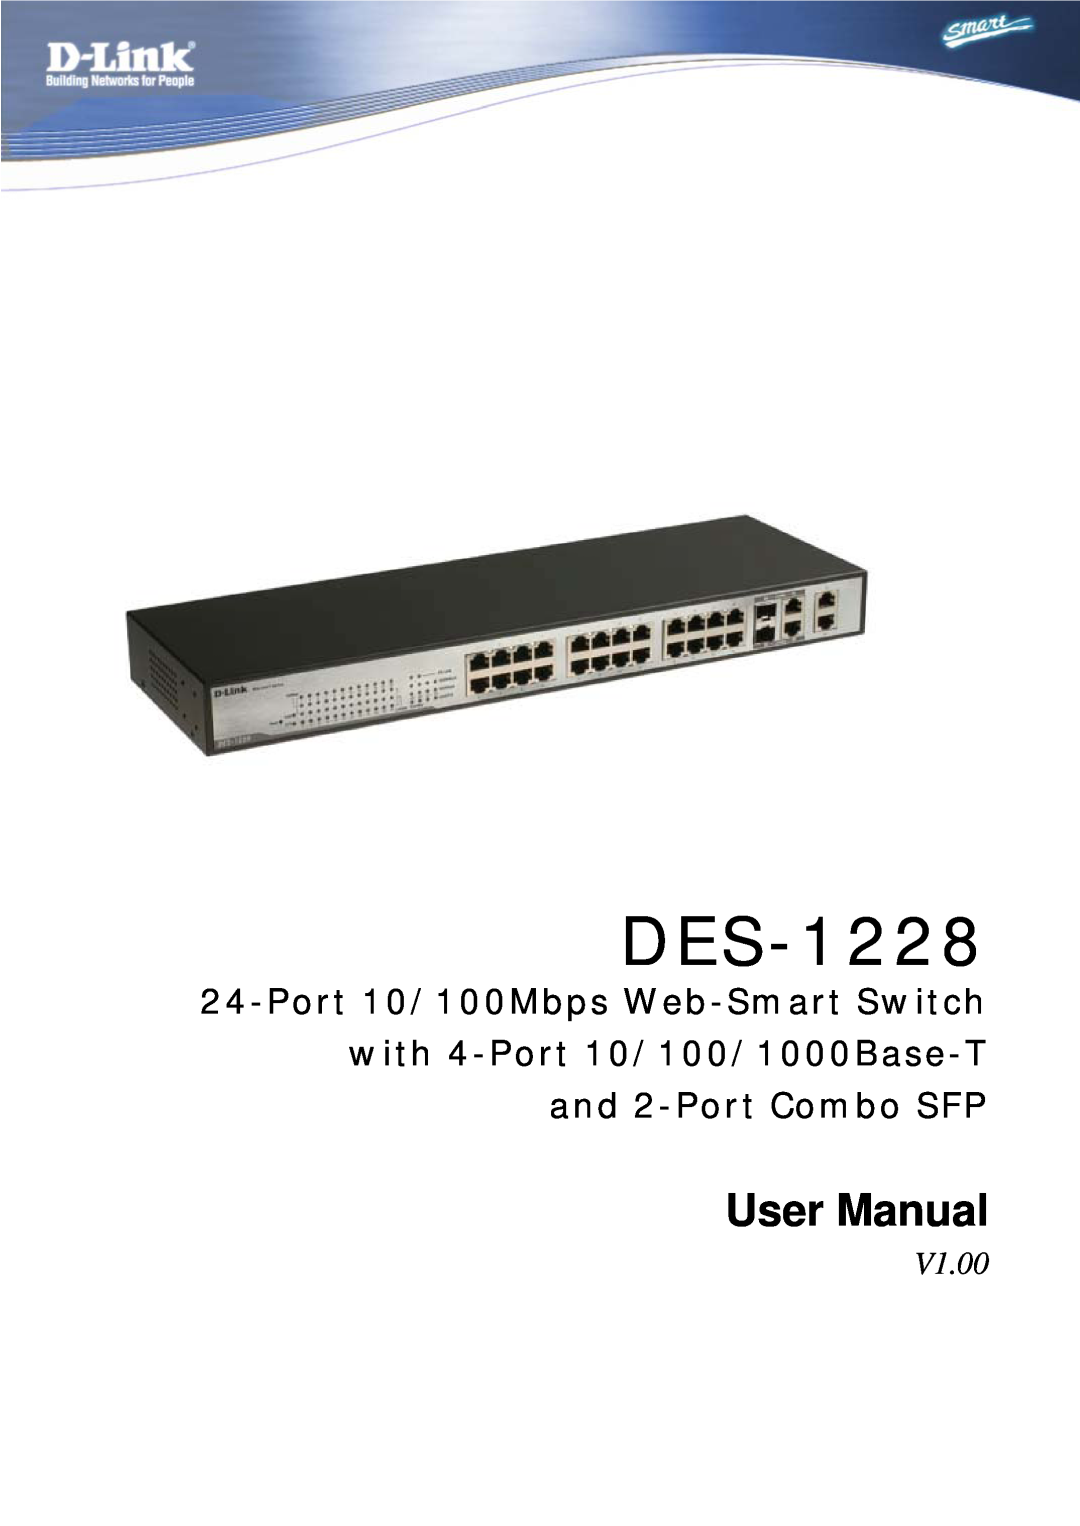 D-Link DES-1228 user manual V1.00, User Manual 